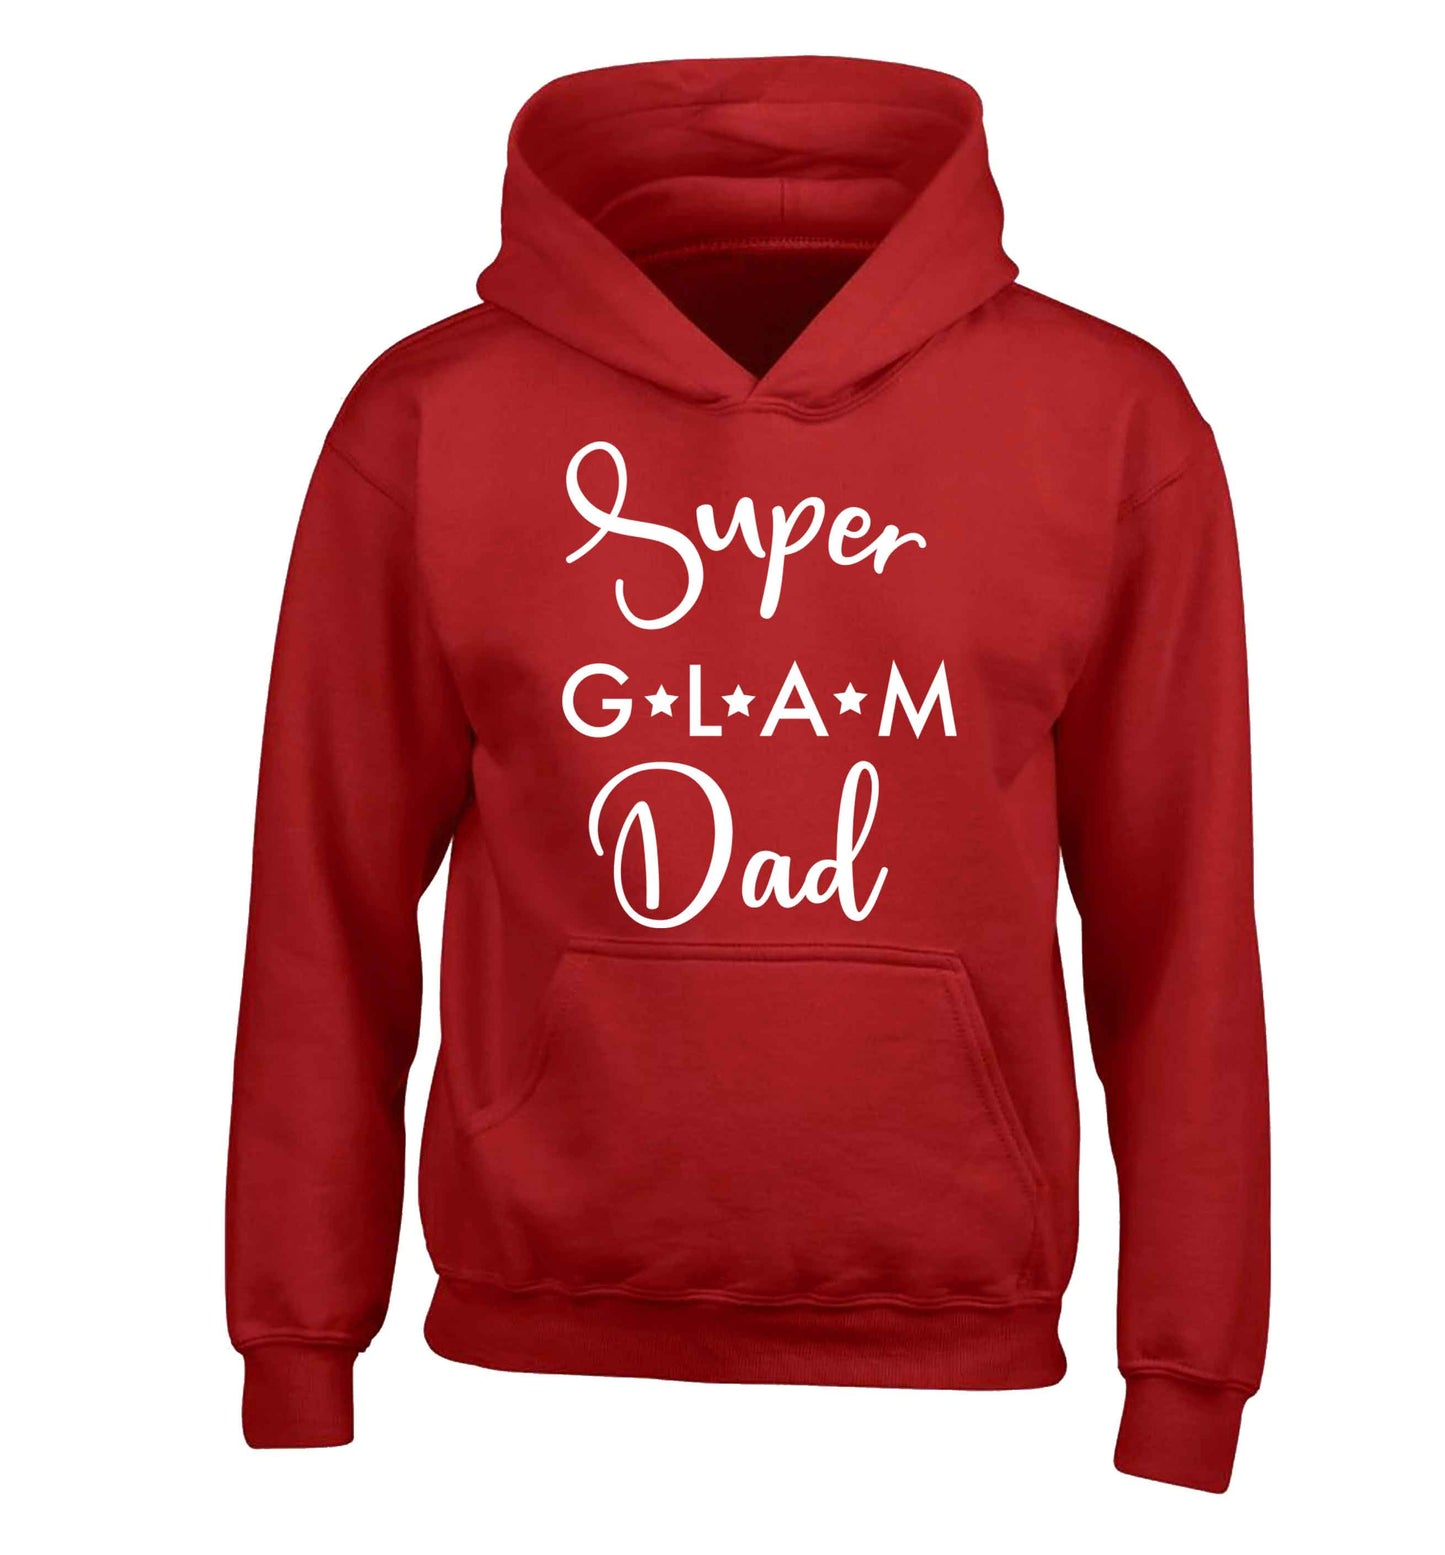 Super glam Dad children's red hoodie 12-13 Years